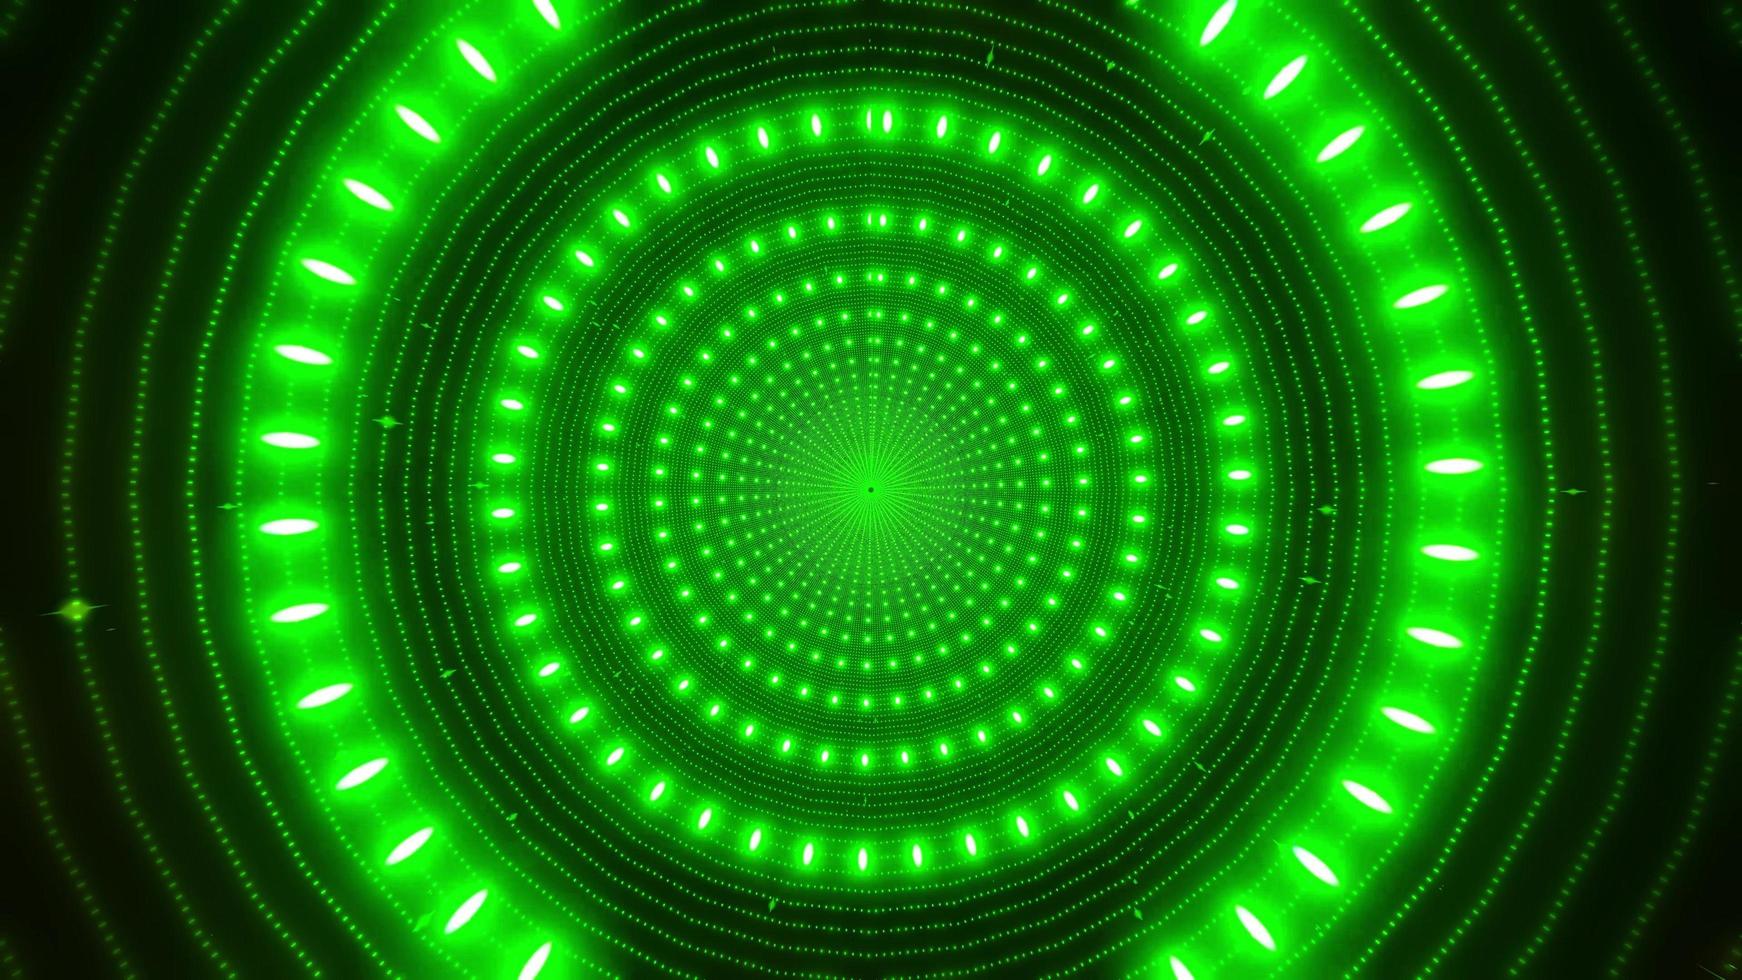 cerchi verdi concentrici 3d illustrazione caleidoscopio design per lo sfondo o carta da parati foto